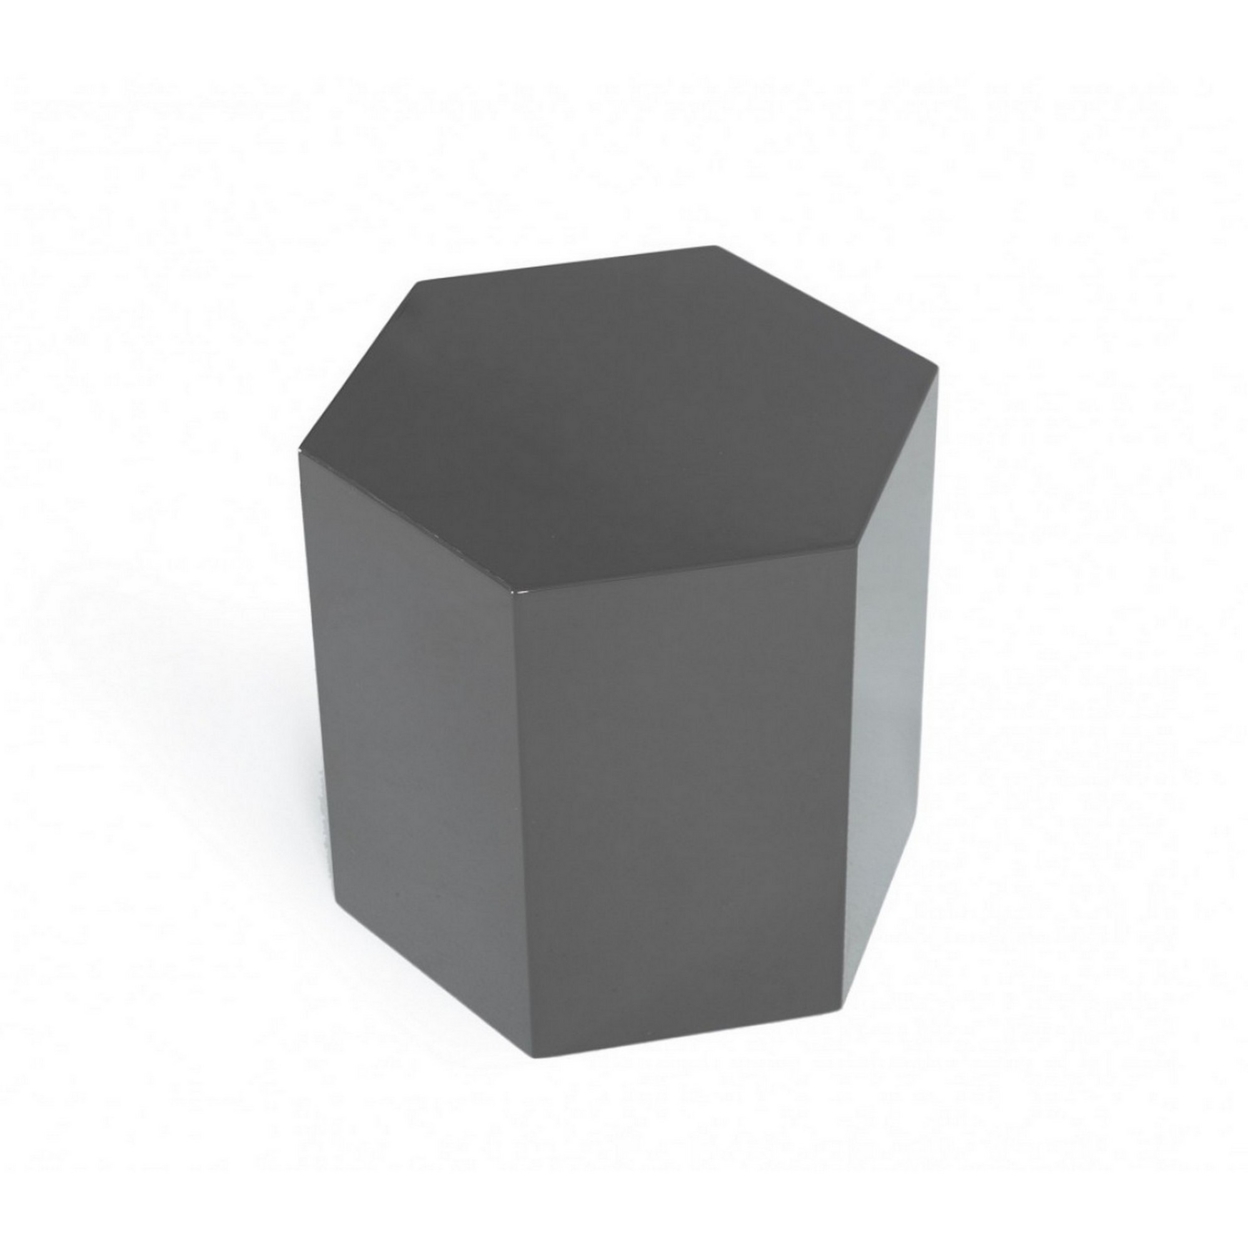 Contemporary High Gloss Hexagonal Wooden End Table, Medium, Gray- Saltoro Sherpi